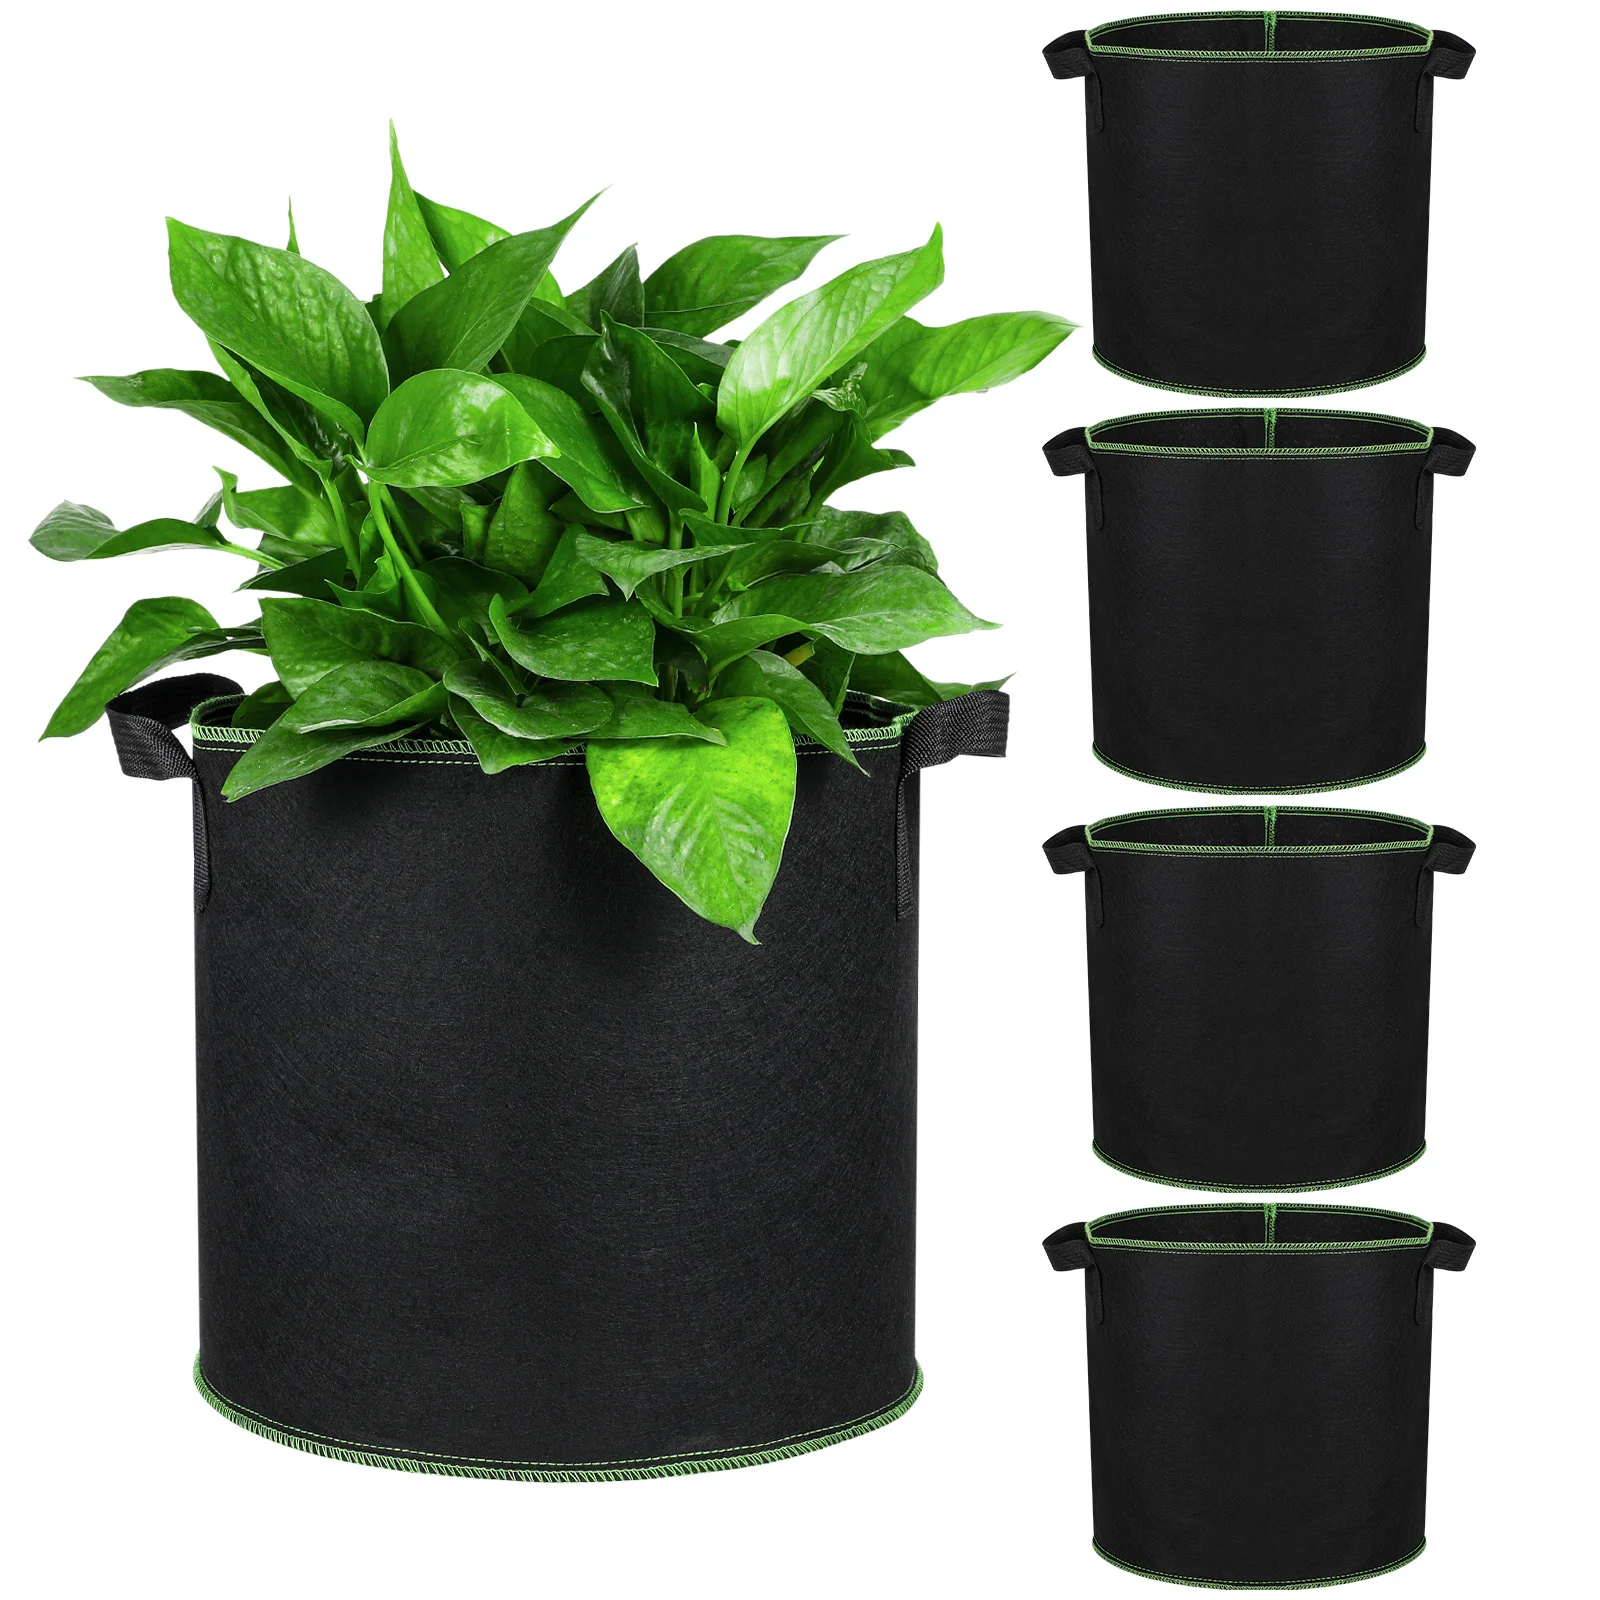 

5 Pcs 4 Gallon Grow Bags Breathable Planter Bags Nursery Pots Handles Pots Container Fabric Pots Plants Flower